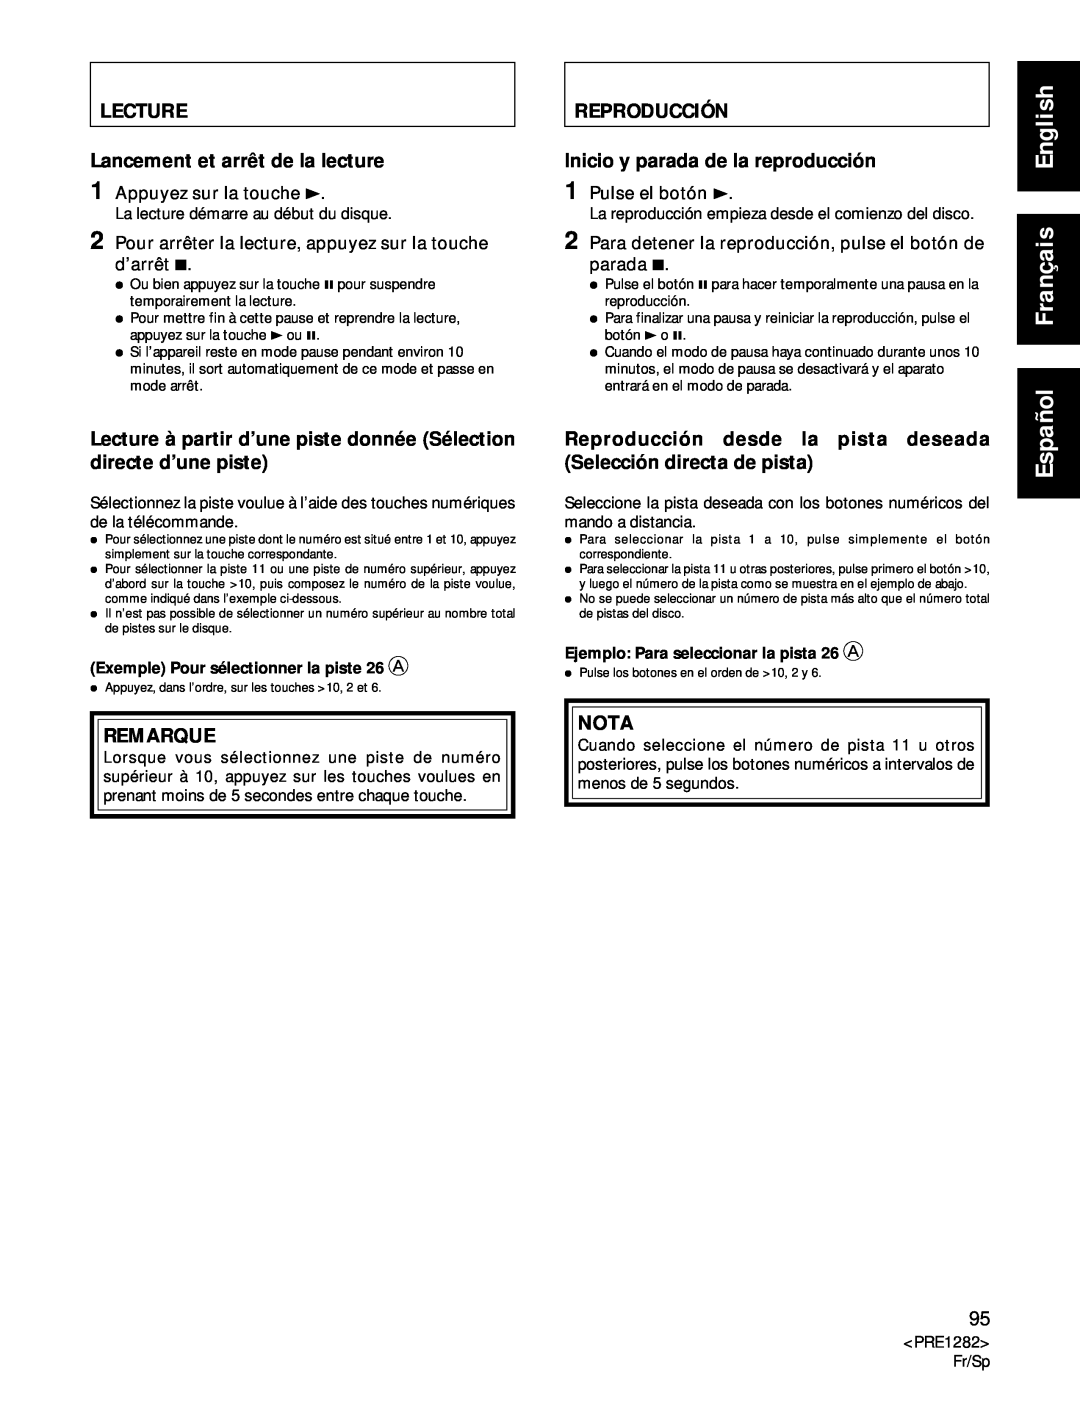 Americana Appliances CDR-850 Lecture, Reproducción, Español Français English, Exemple Pour sélectionner la piste 26 A 